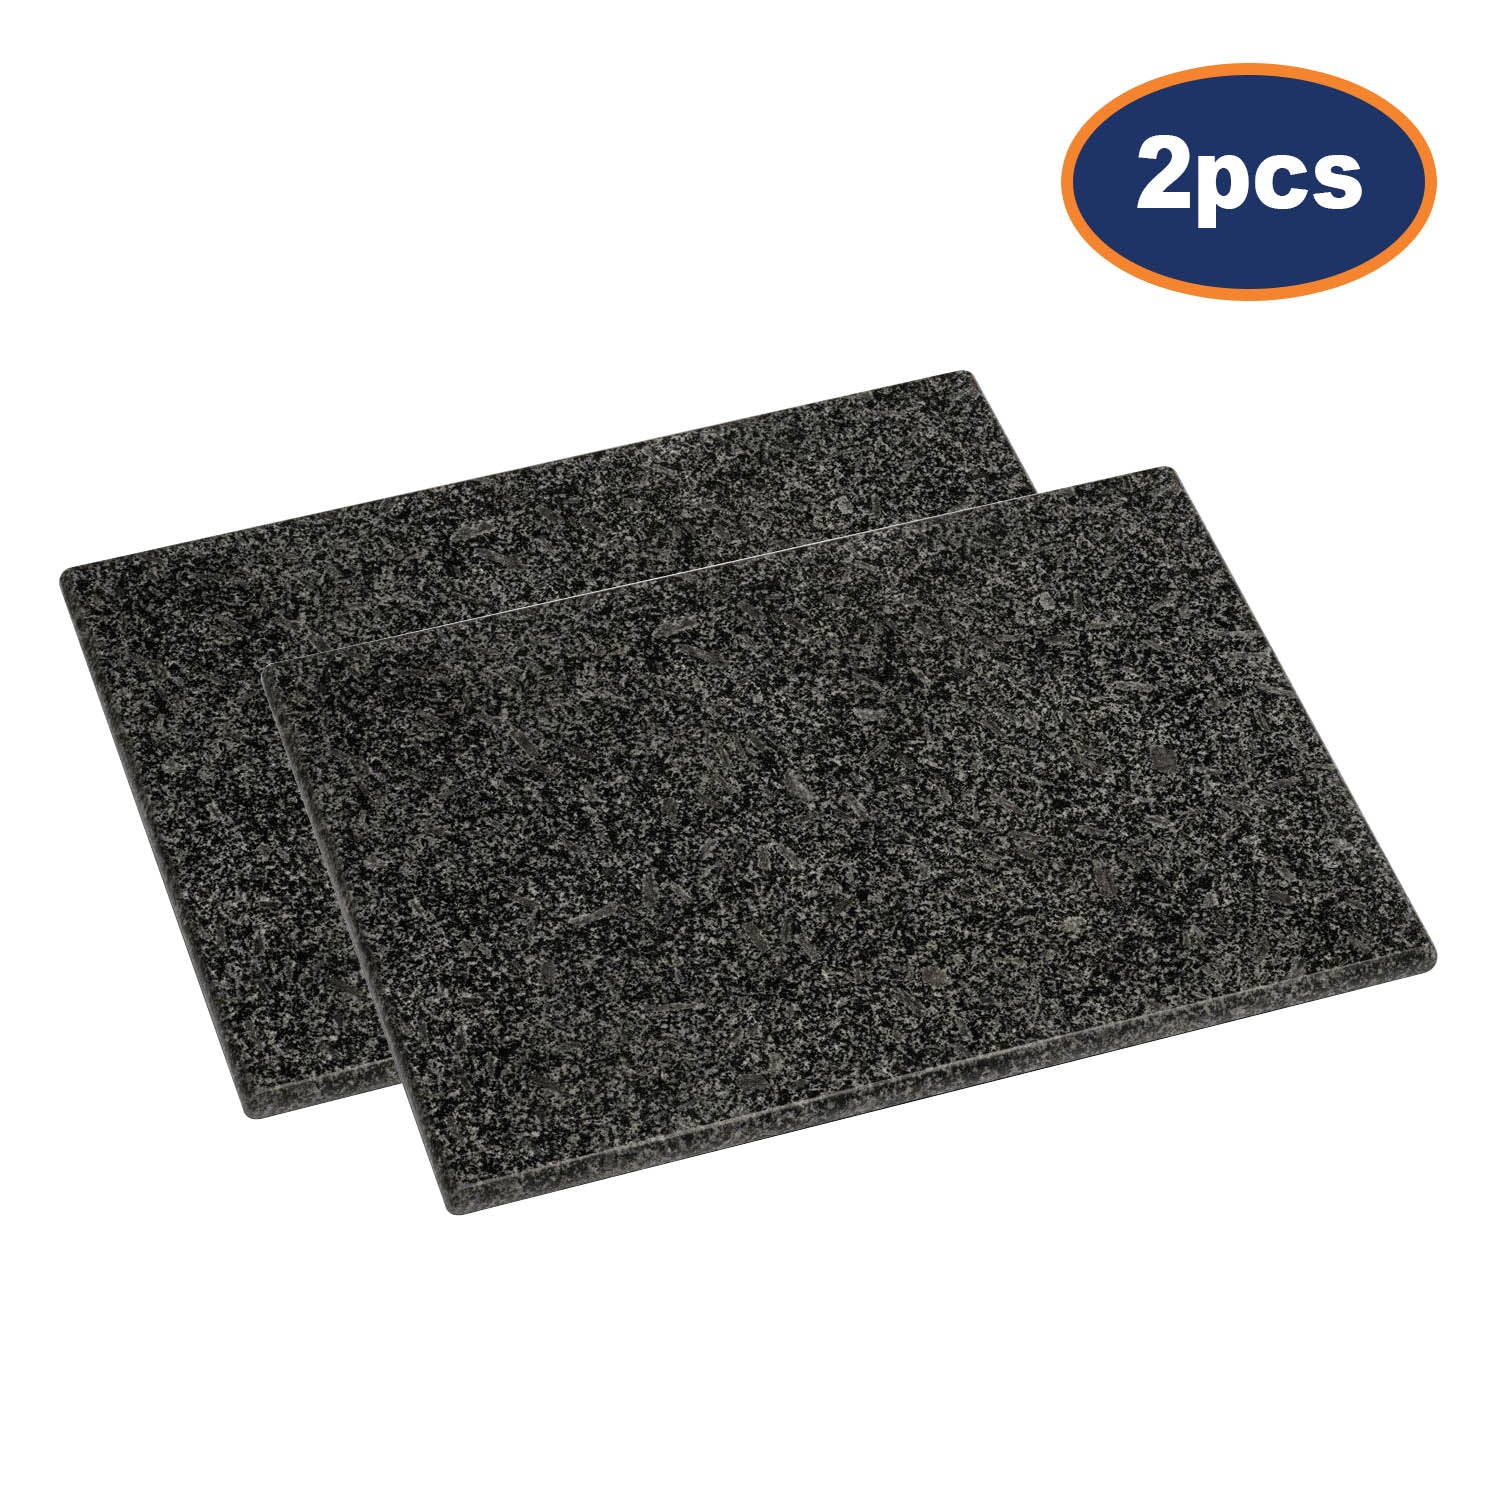 2pcs Black Speckled Granite Cutting  Board